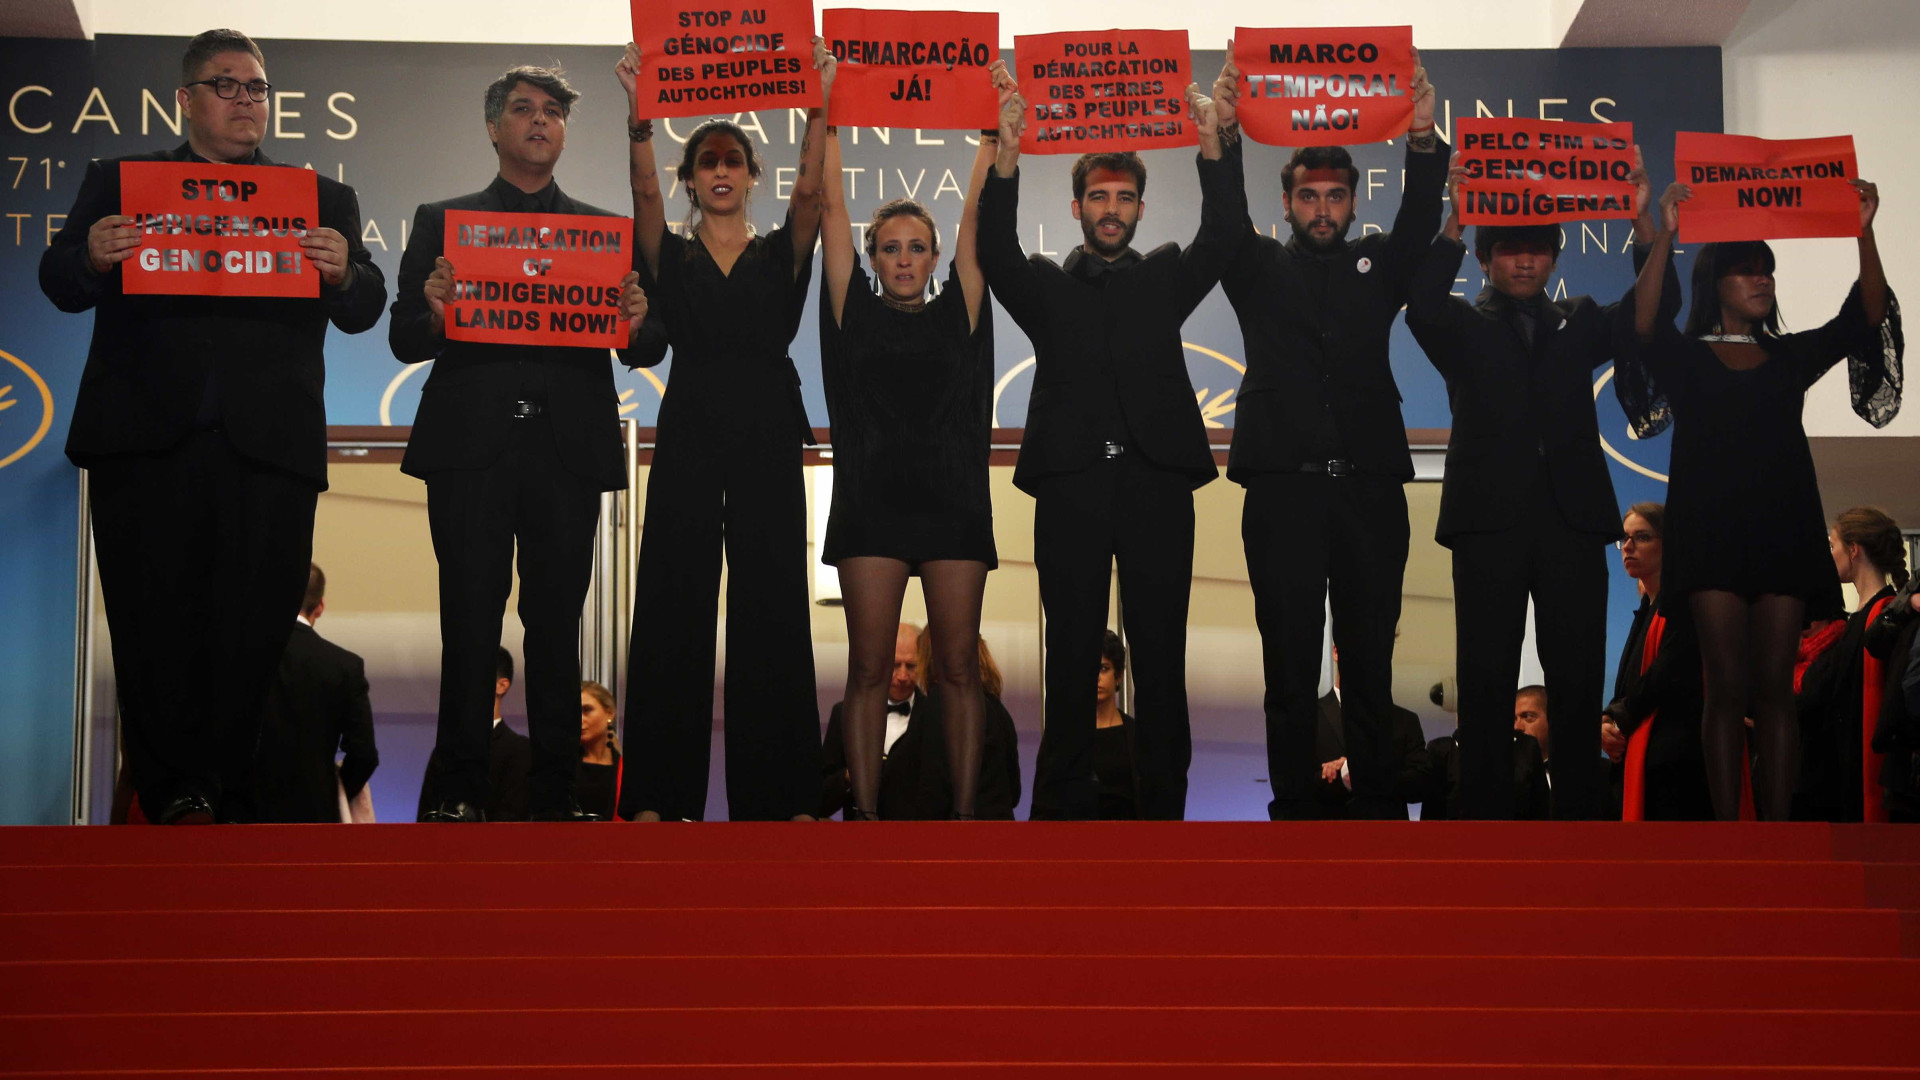 Brasileiros fazem protesto pró-demarcação de terras indígenas em Cannes